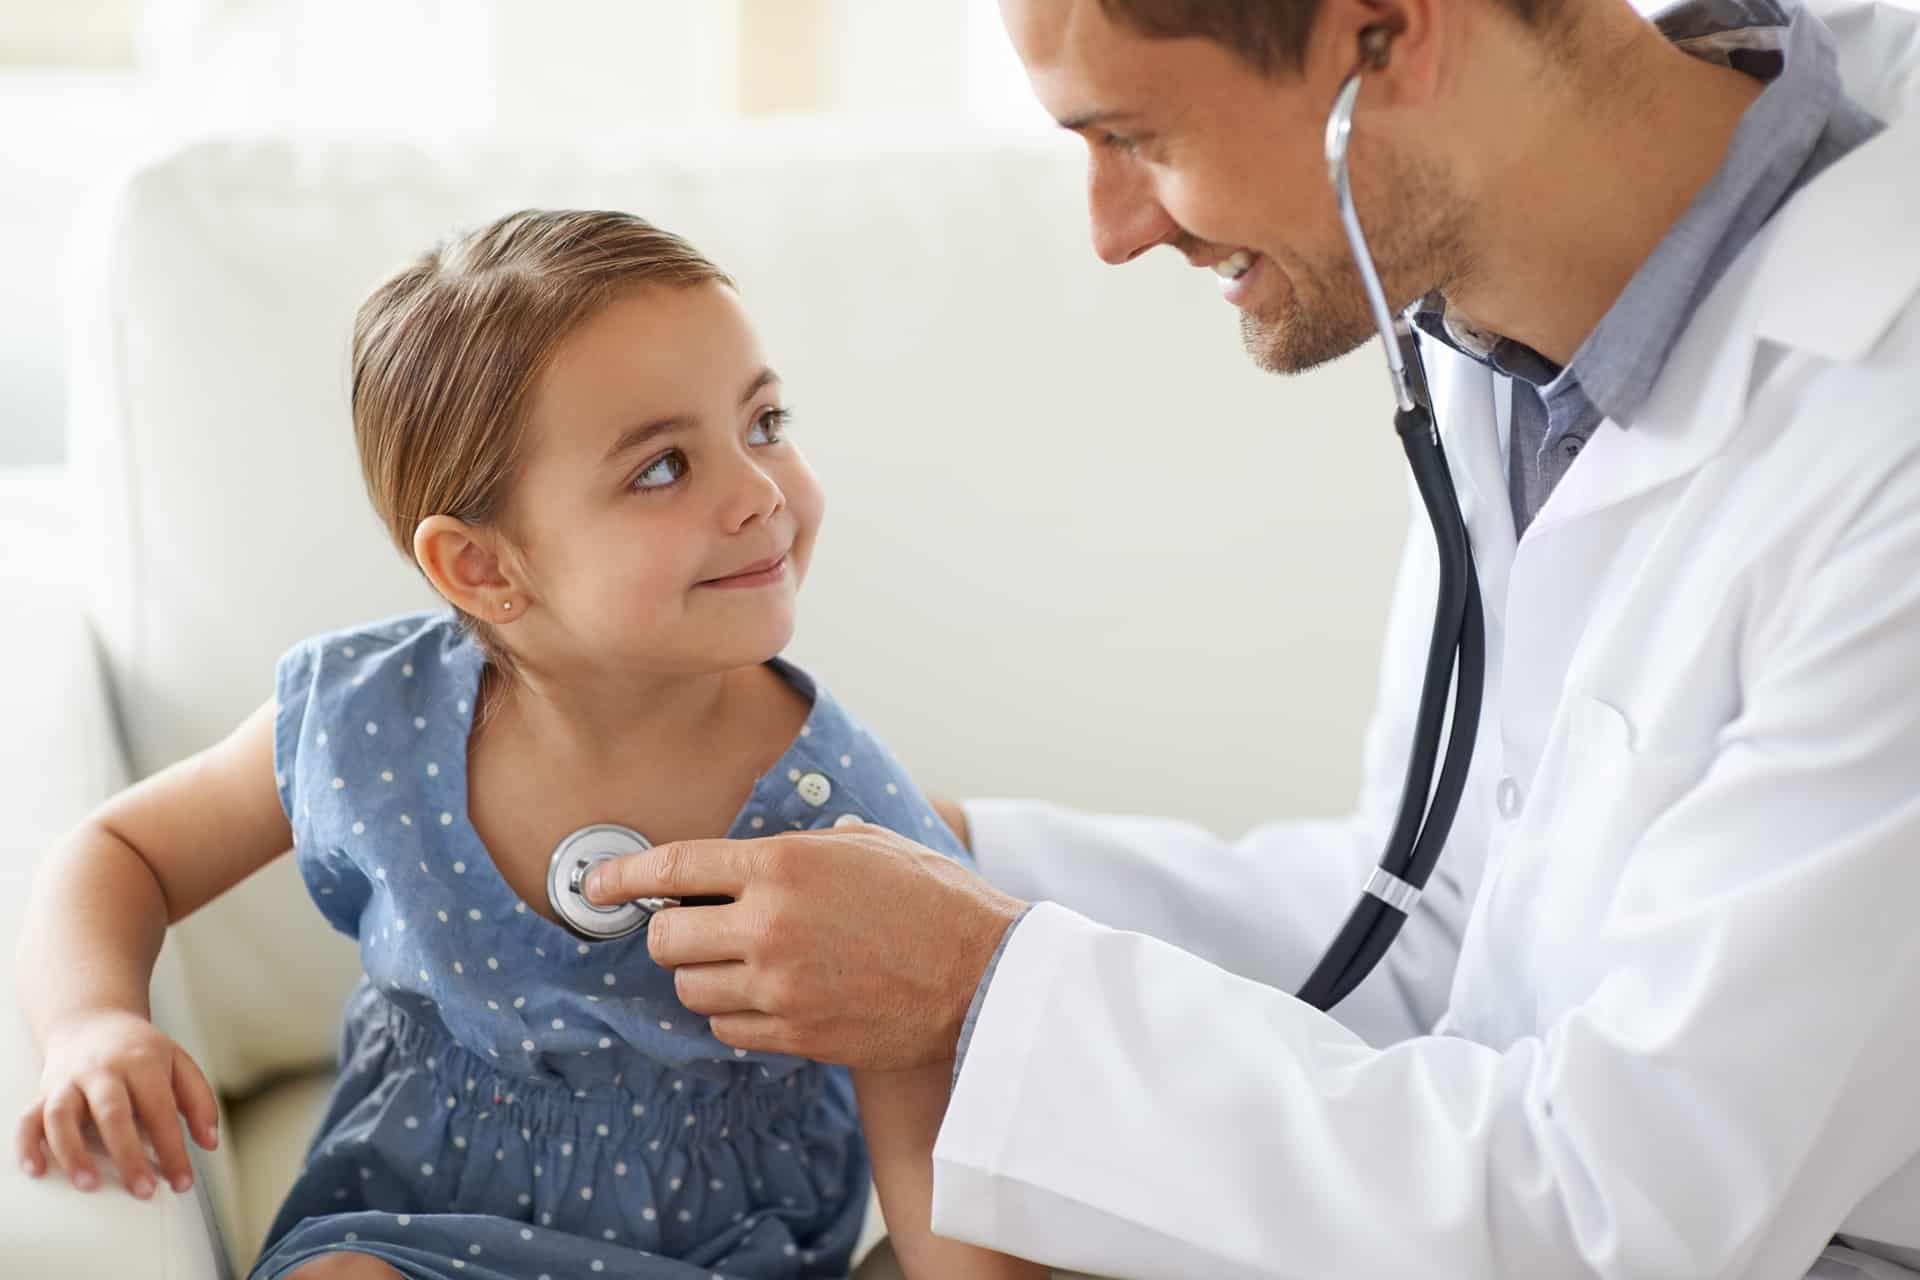 Effettuiamo settimanalmente visite pediatriche in sede, con attenzione specifica alle visite generali, controlli di salute e visite allergologiche pediatriche.